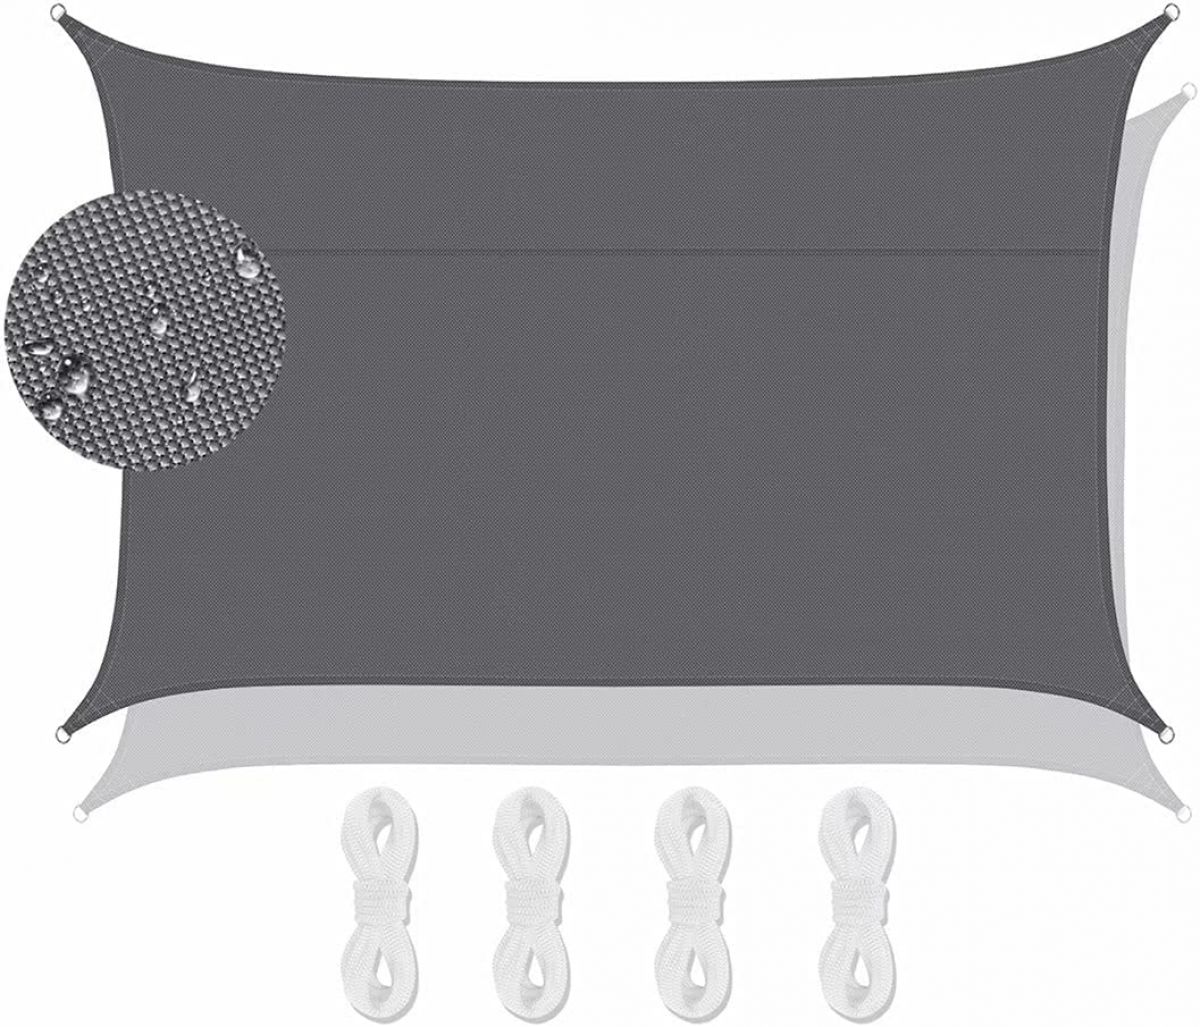 Водонепроницаемый солнцезащитный козырек Lanbent 4×5 м, серый